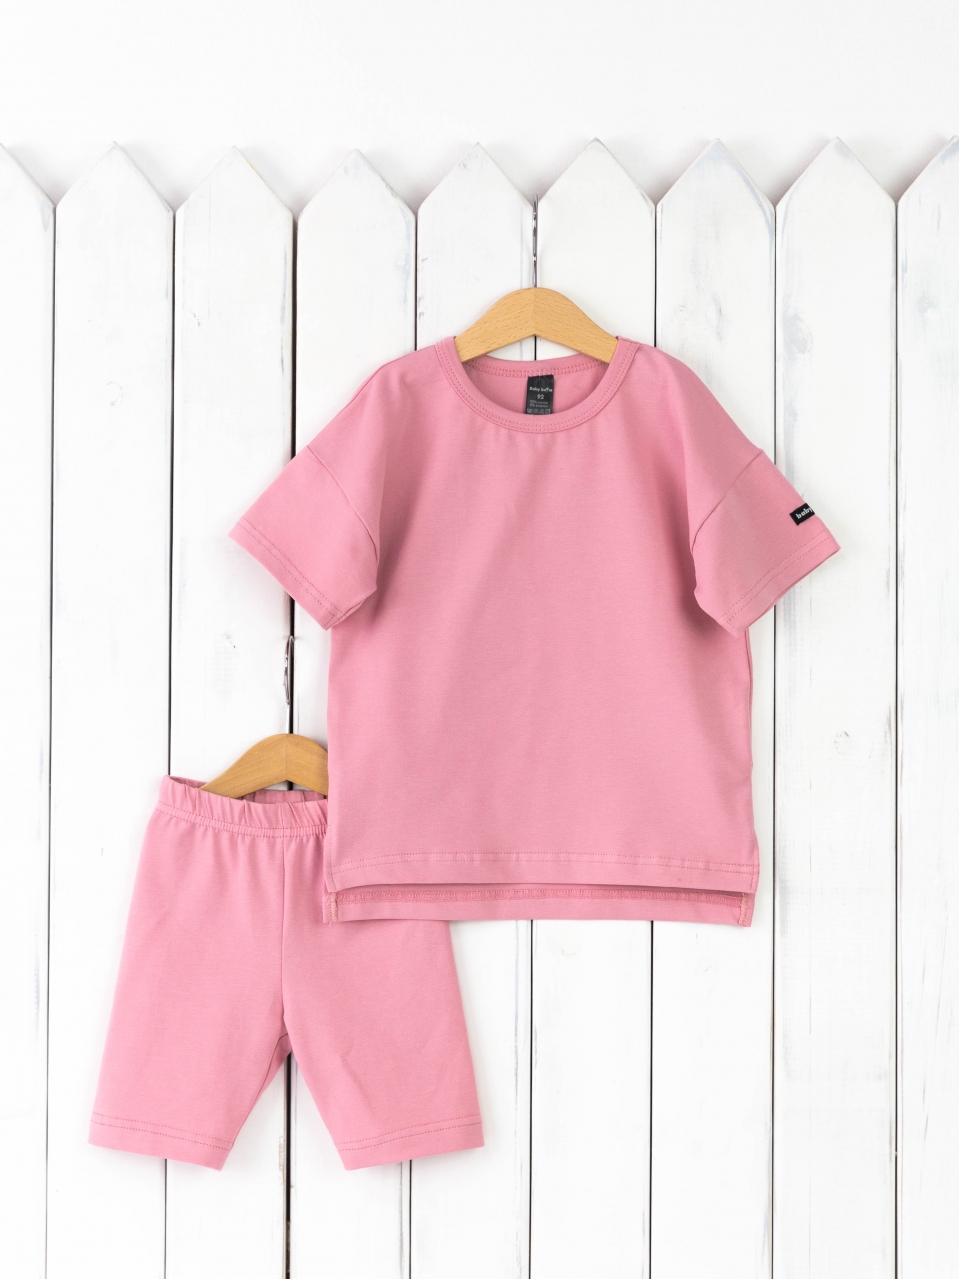 КД416/9-К Комплект детский р.122 футболка+легинсы/розовый зефир Бэби Бум